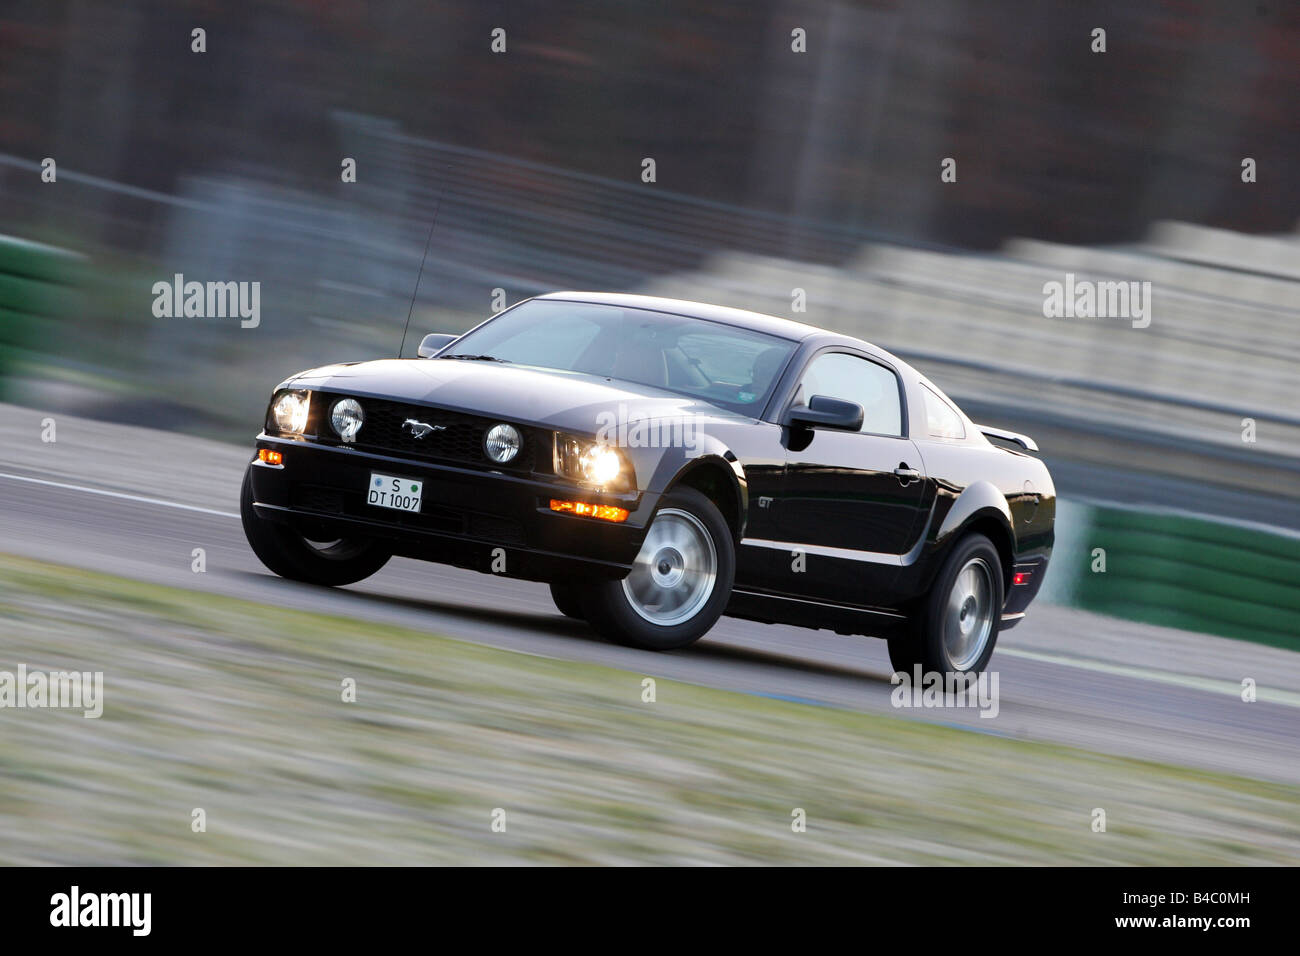 Auto, Ford Mustang GT, Baujahr 2004-Roadster, Coupé/Coupe, schwarz, fahren,  schräg von vorne, Vorderansicht, Einfahr-und Prüfstrecke Stockfotografie -  Alamy